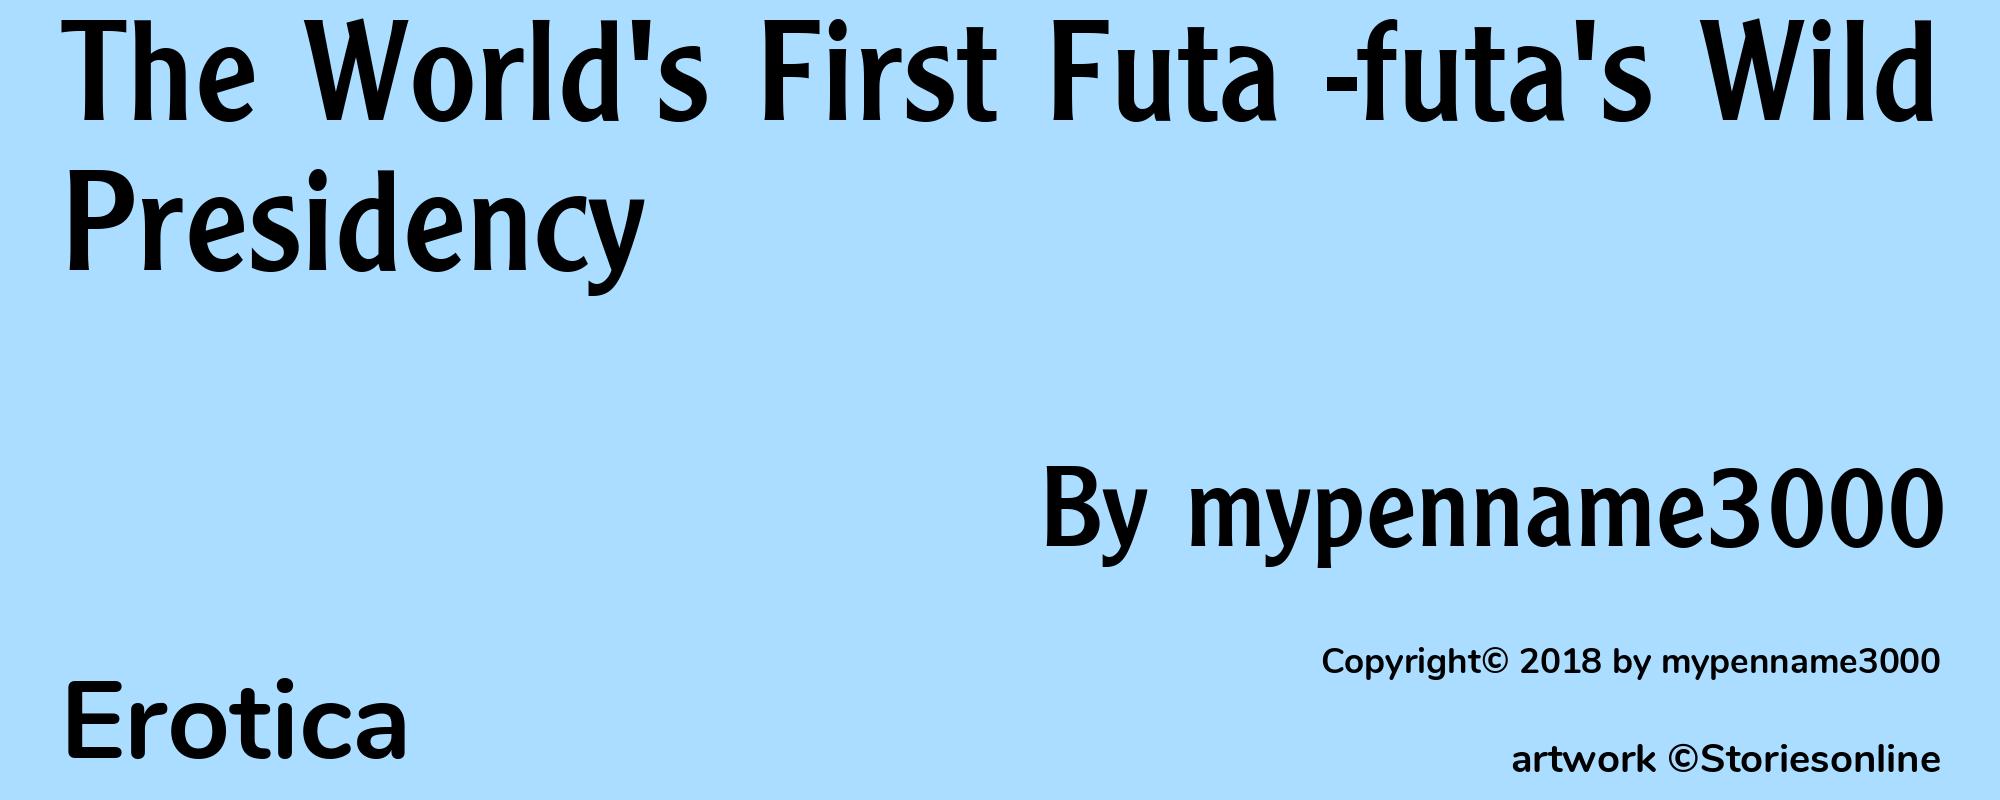 The World's First Futa -futa's Wild Presidency - Cover